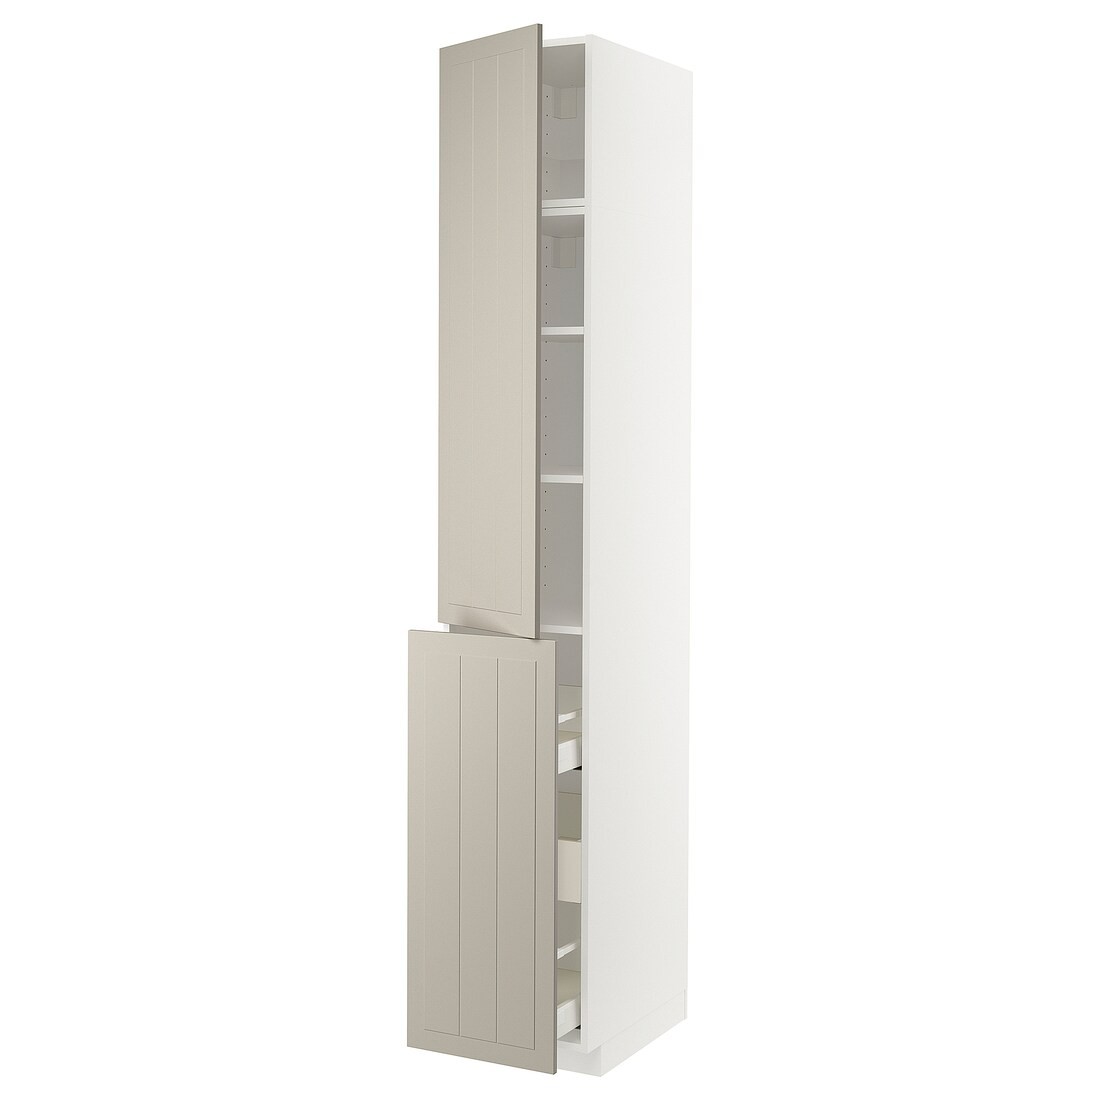 IKEA METOD МЕТОД / MAXIMERA МАКСІМЕРА Висока шафа 3 шухляди / 1 двері / 2 полиці, білий / Stensund бежевий, 40x60x240 см 99463398 994.633.98